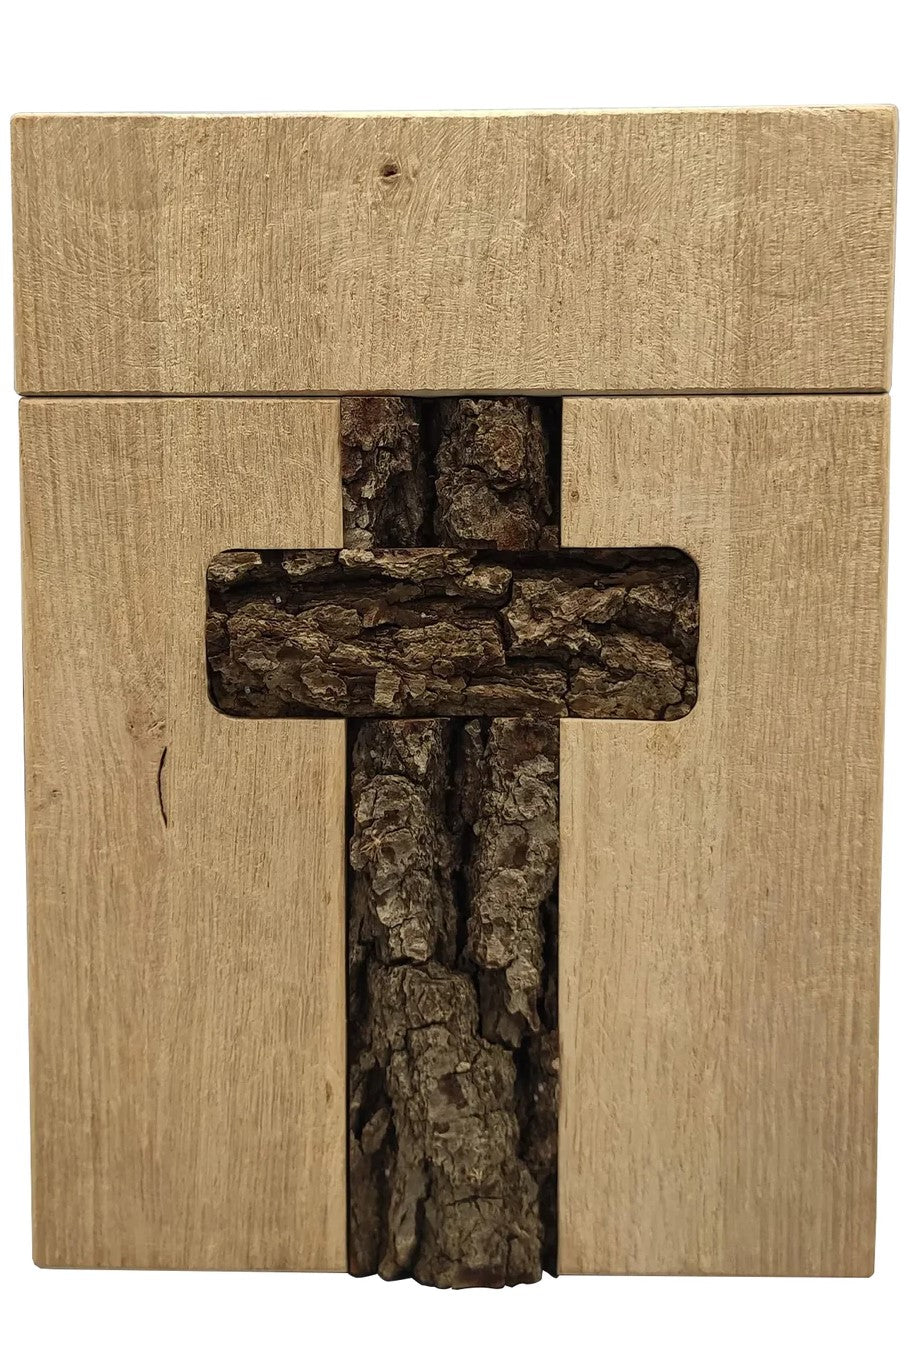 Holzurne mit eingebettetes Kreuz aus Rinde